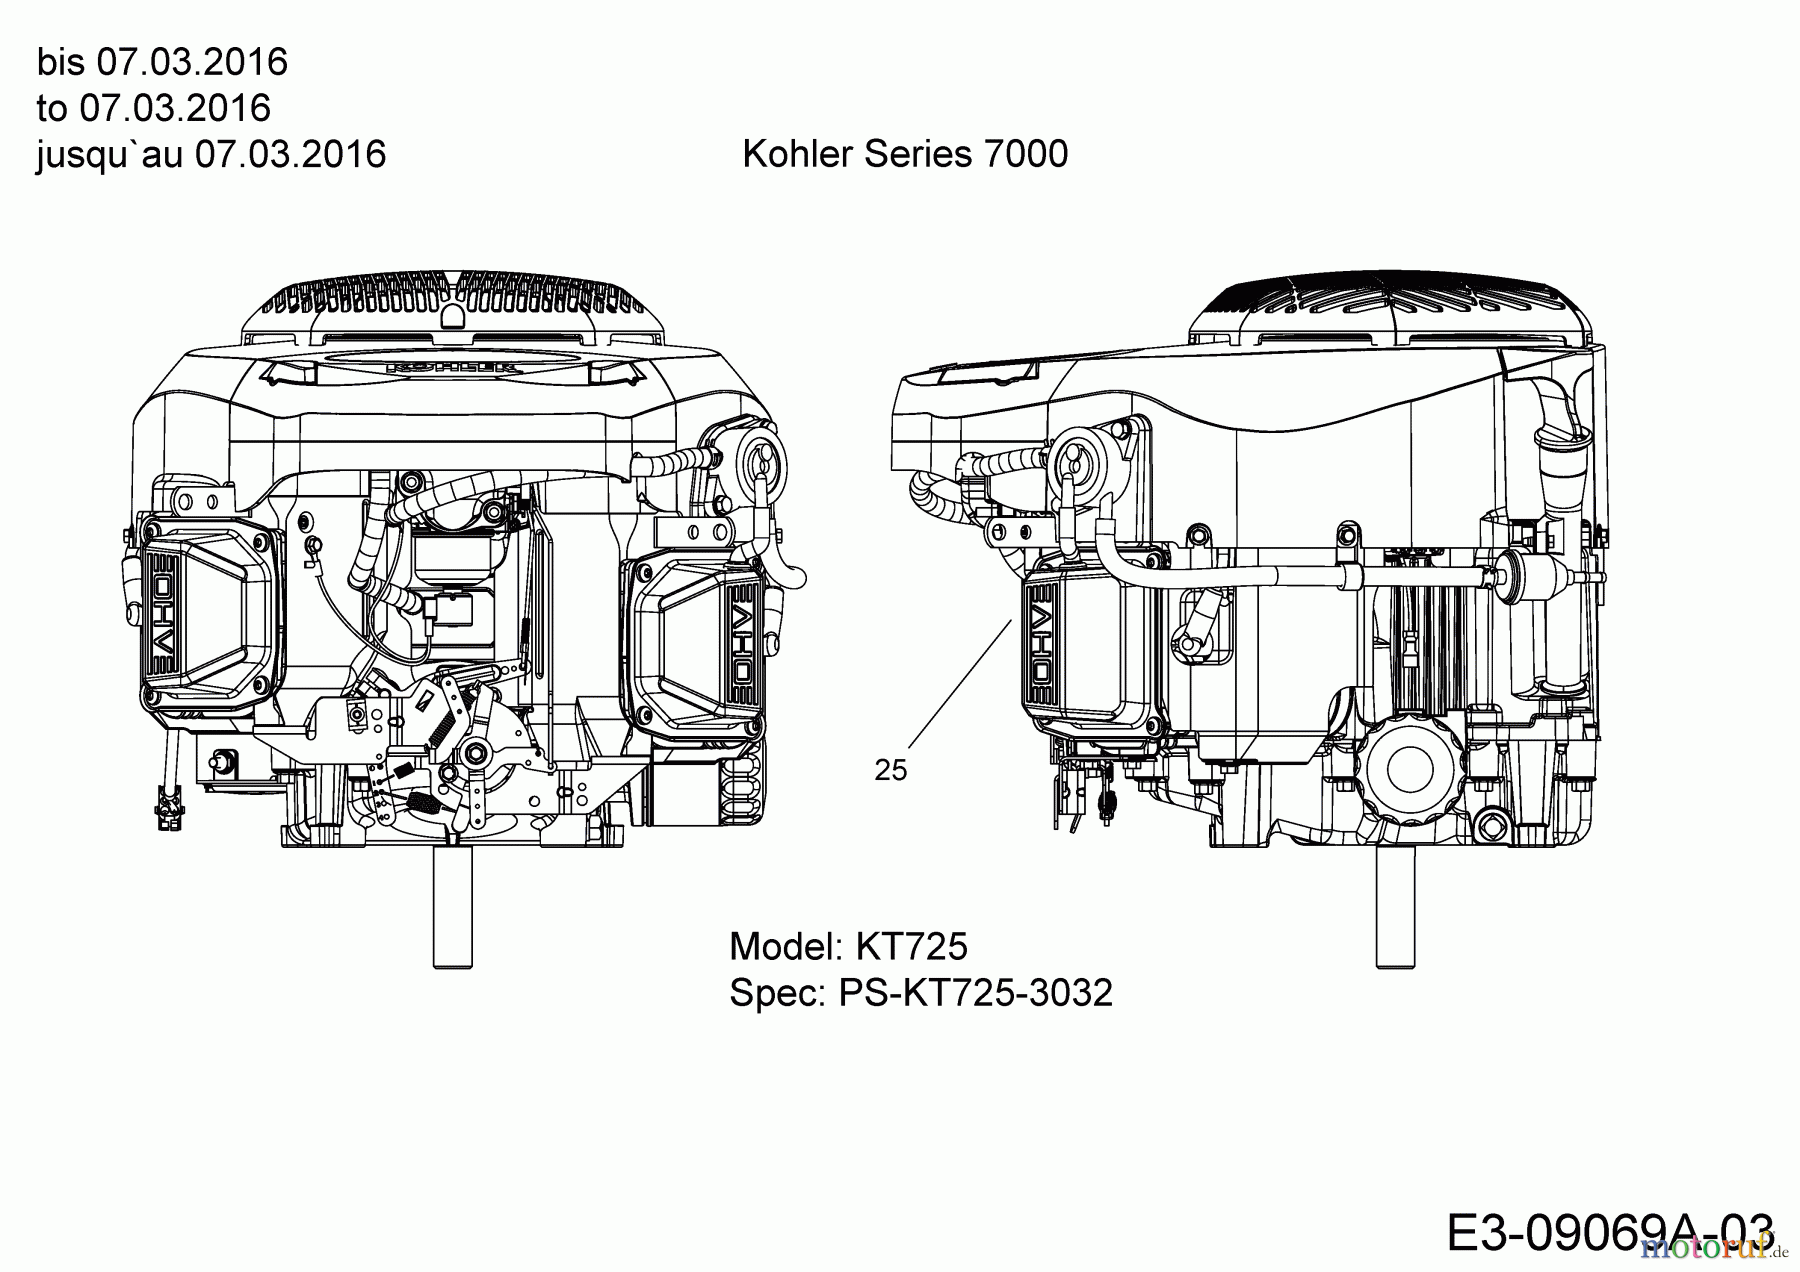  Massey Ferguson Rasentraktoren MF 46-22 SH 13HP93GT695  (2016) Motor Kohler bis 07.03.2016